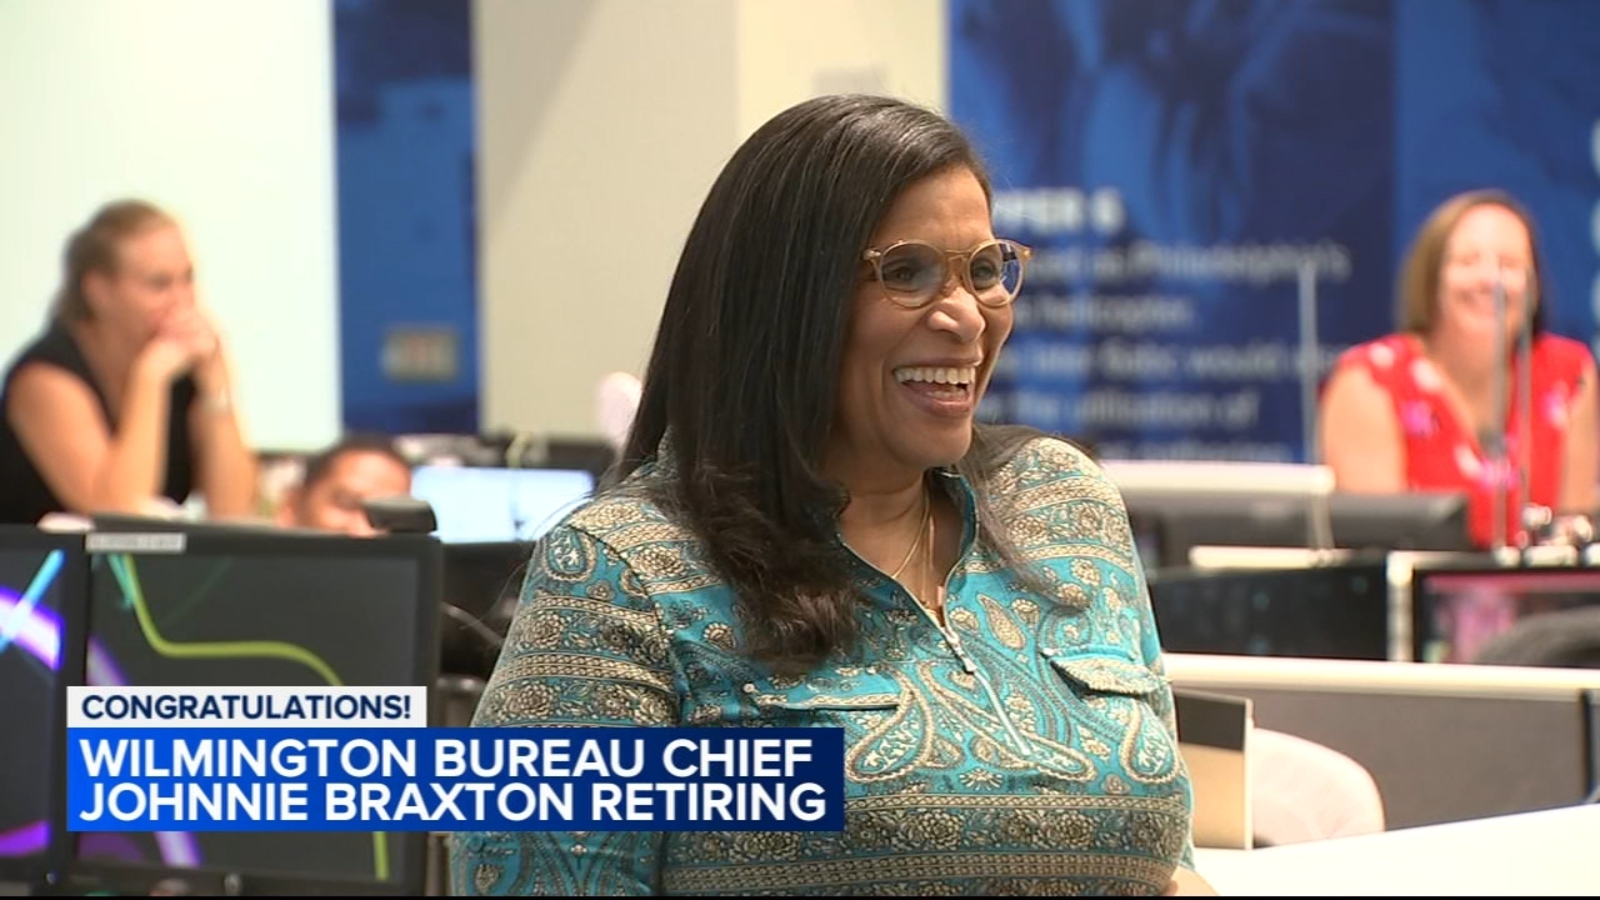   
																Action News' Wilmington Bureau Chief Johnnie Braxton retiring 
															 